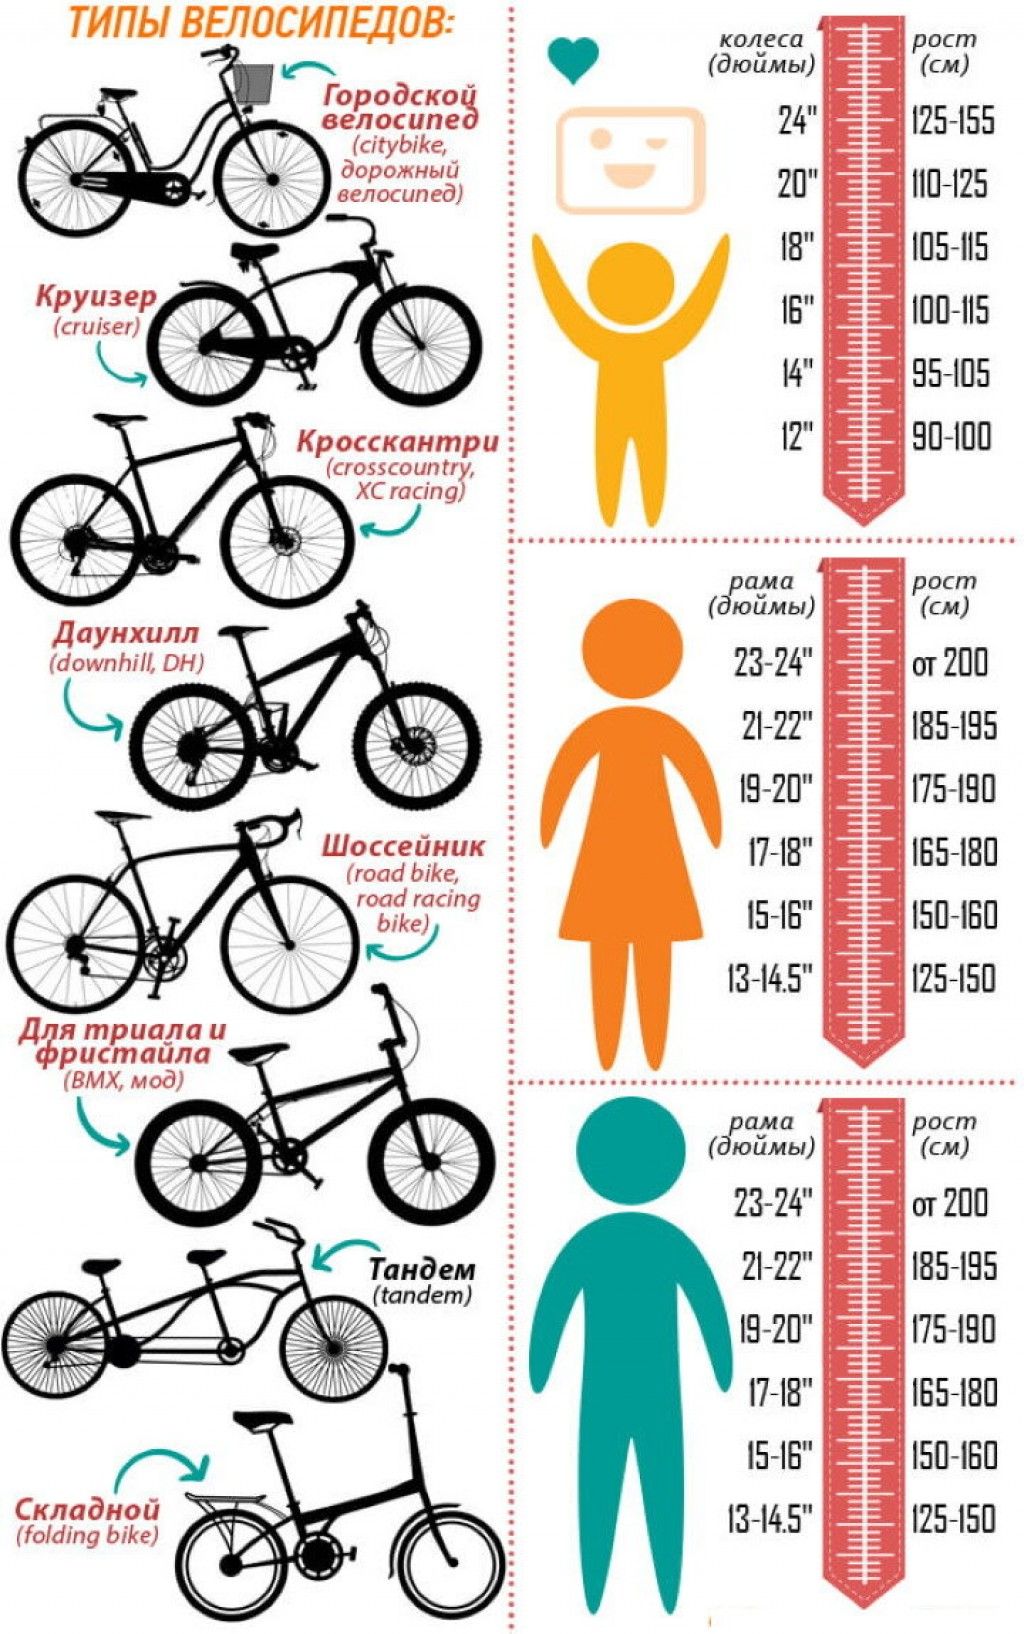 26 дюймов колеса велосипеда на какой рост. Как подобрать размер рамы велосипеда по росту ребенка. Как выбрать размер рамы велосипеда по росту ребенка. Размер рамы и колес велосипеда по росту таблица для детей. Размер рамы у велосипеда с 26 колесами.